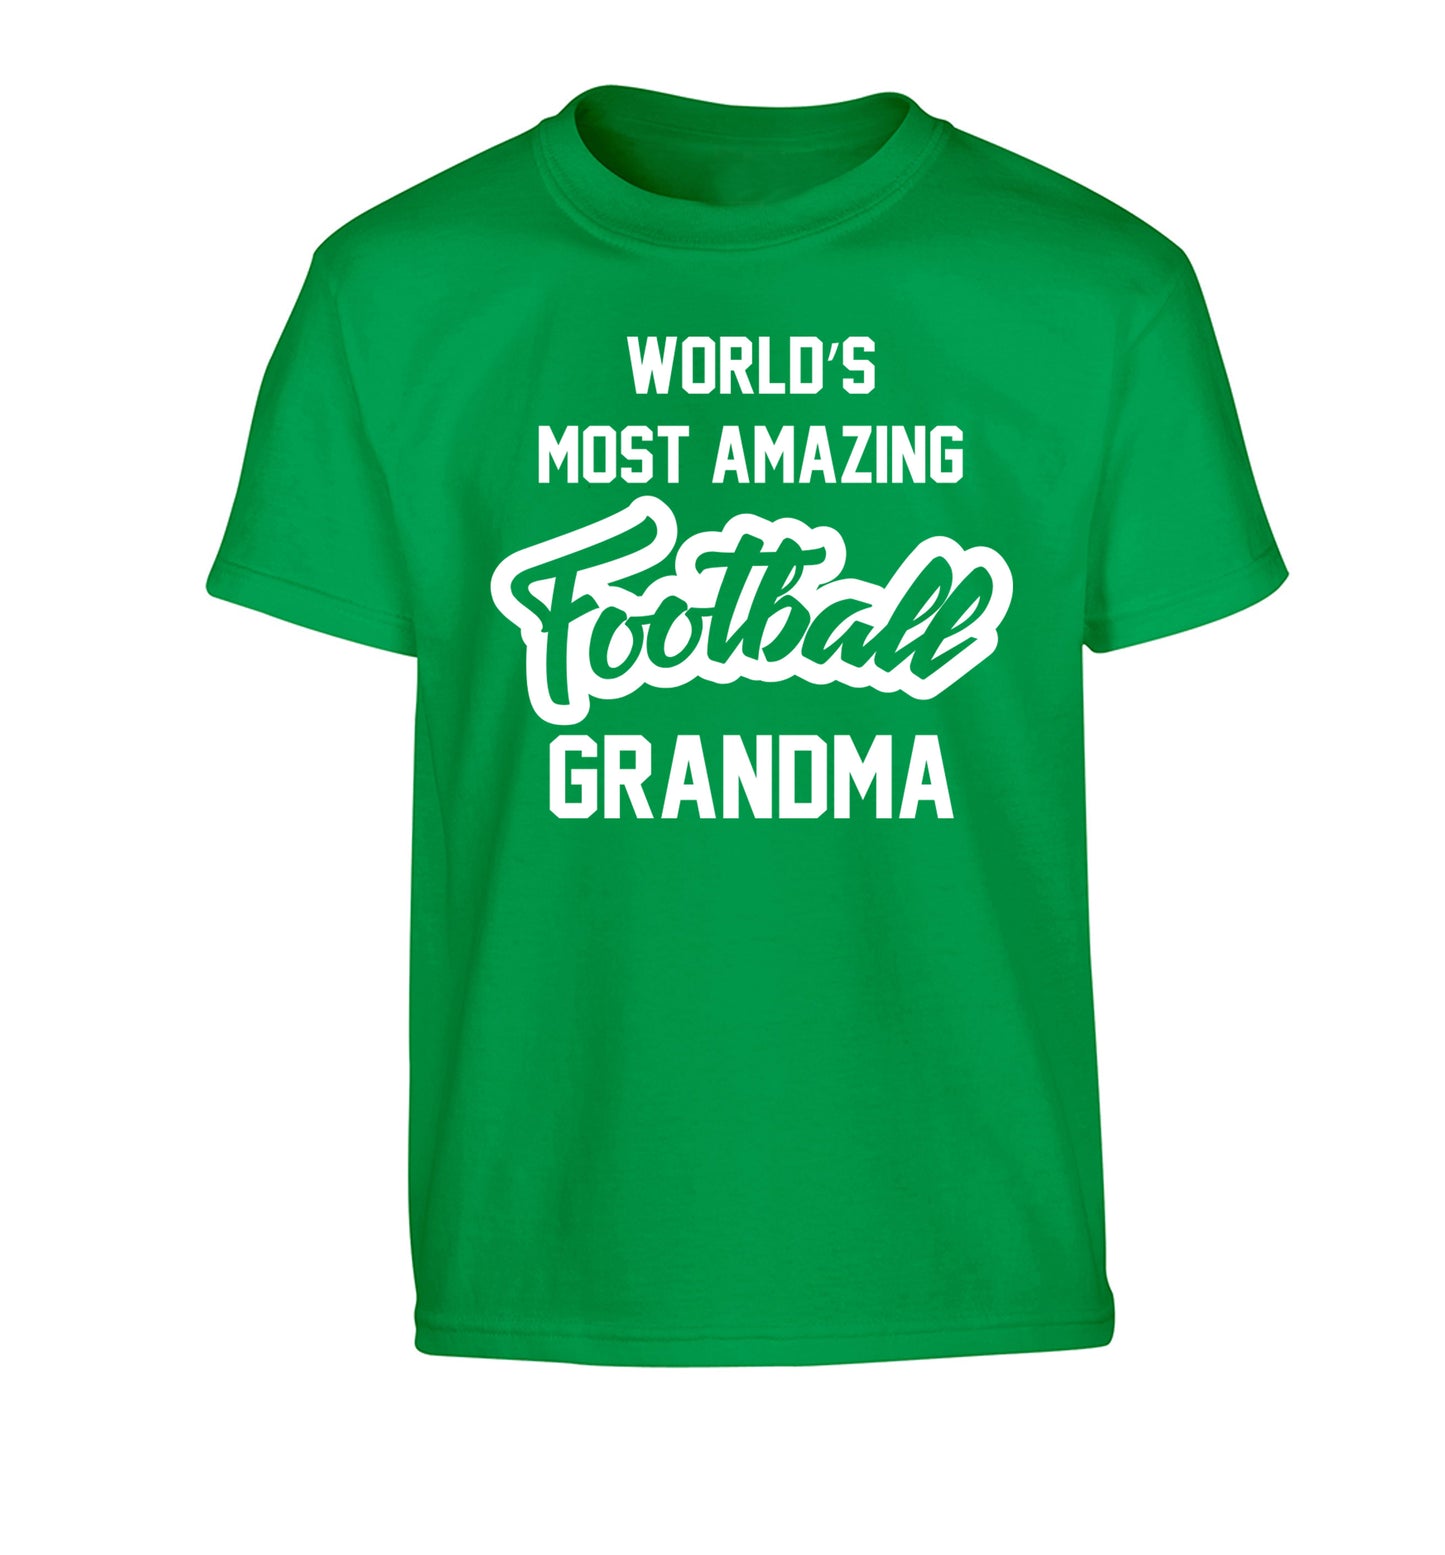 Worlds most amazing football grandma Children's green Tshirt 12-14 Years